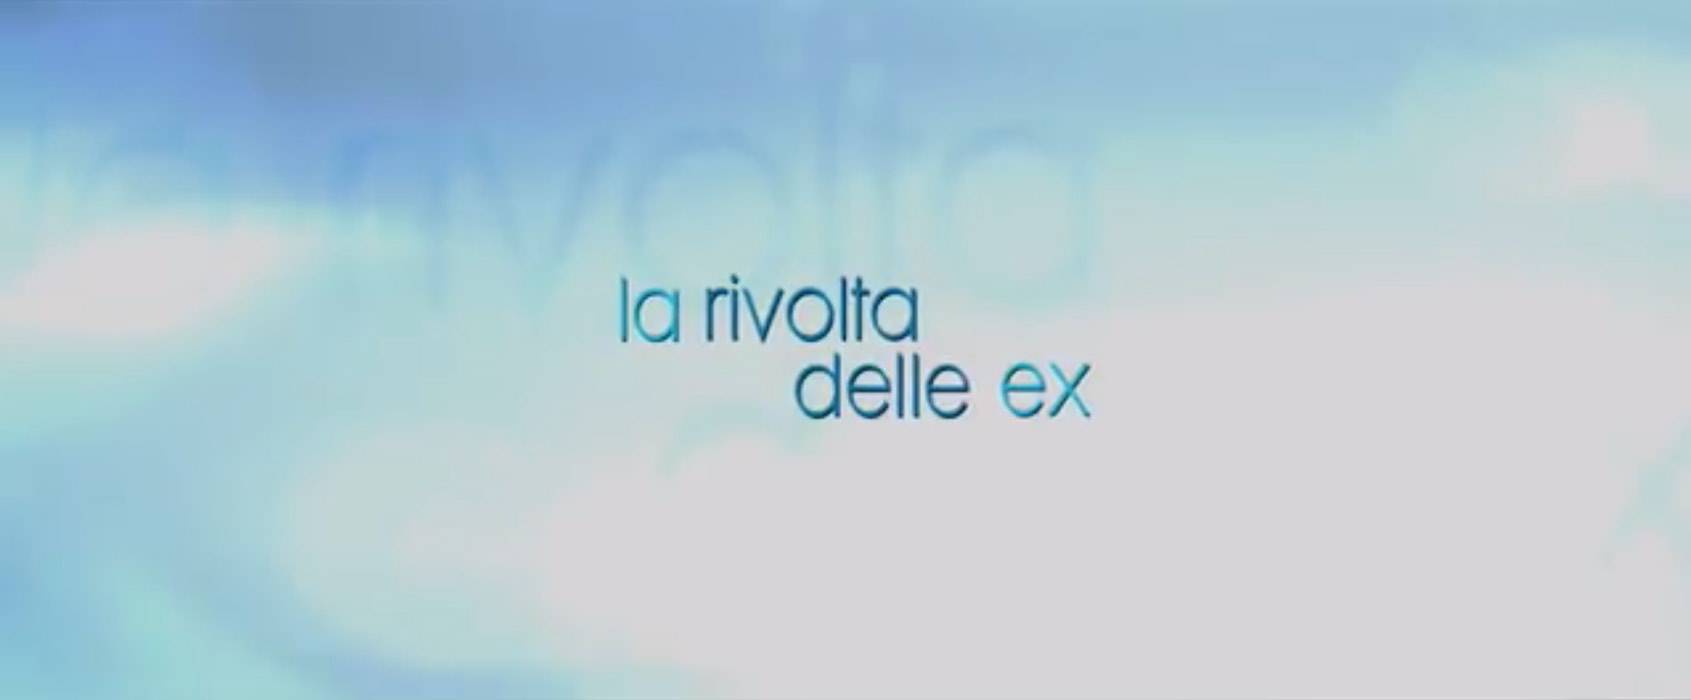 Italia 1, 'La rivolta delle ex': info, trama e cast sul film con Michael Douglas